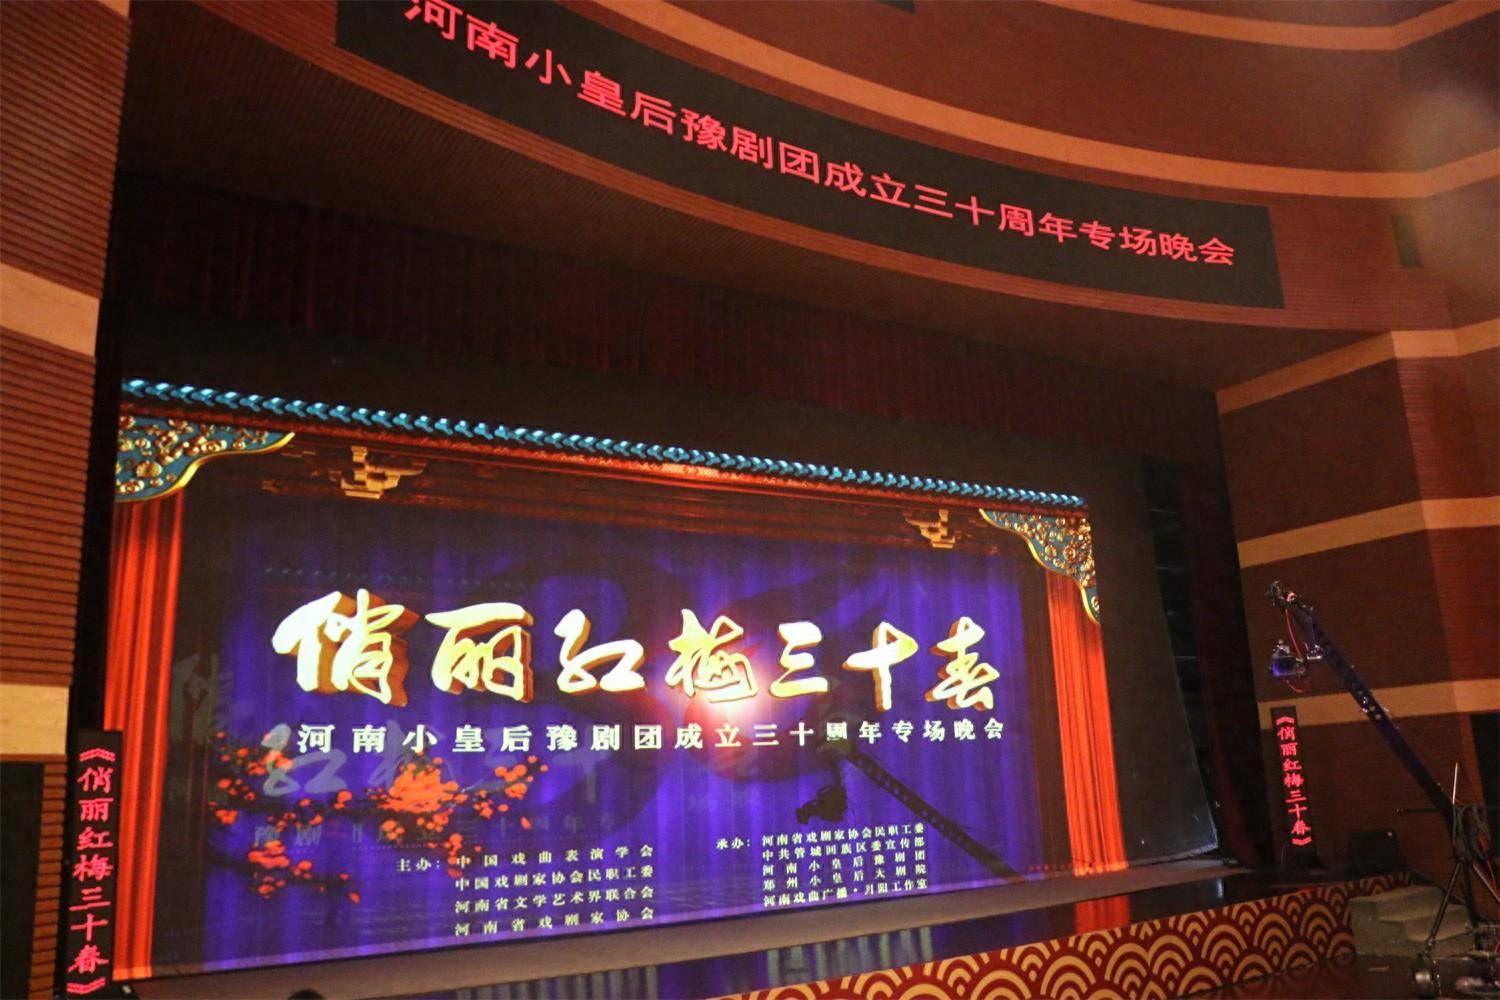 河南小皇后豫剧团建团三十周年系列庆典活动发布会成功举行